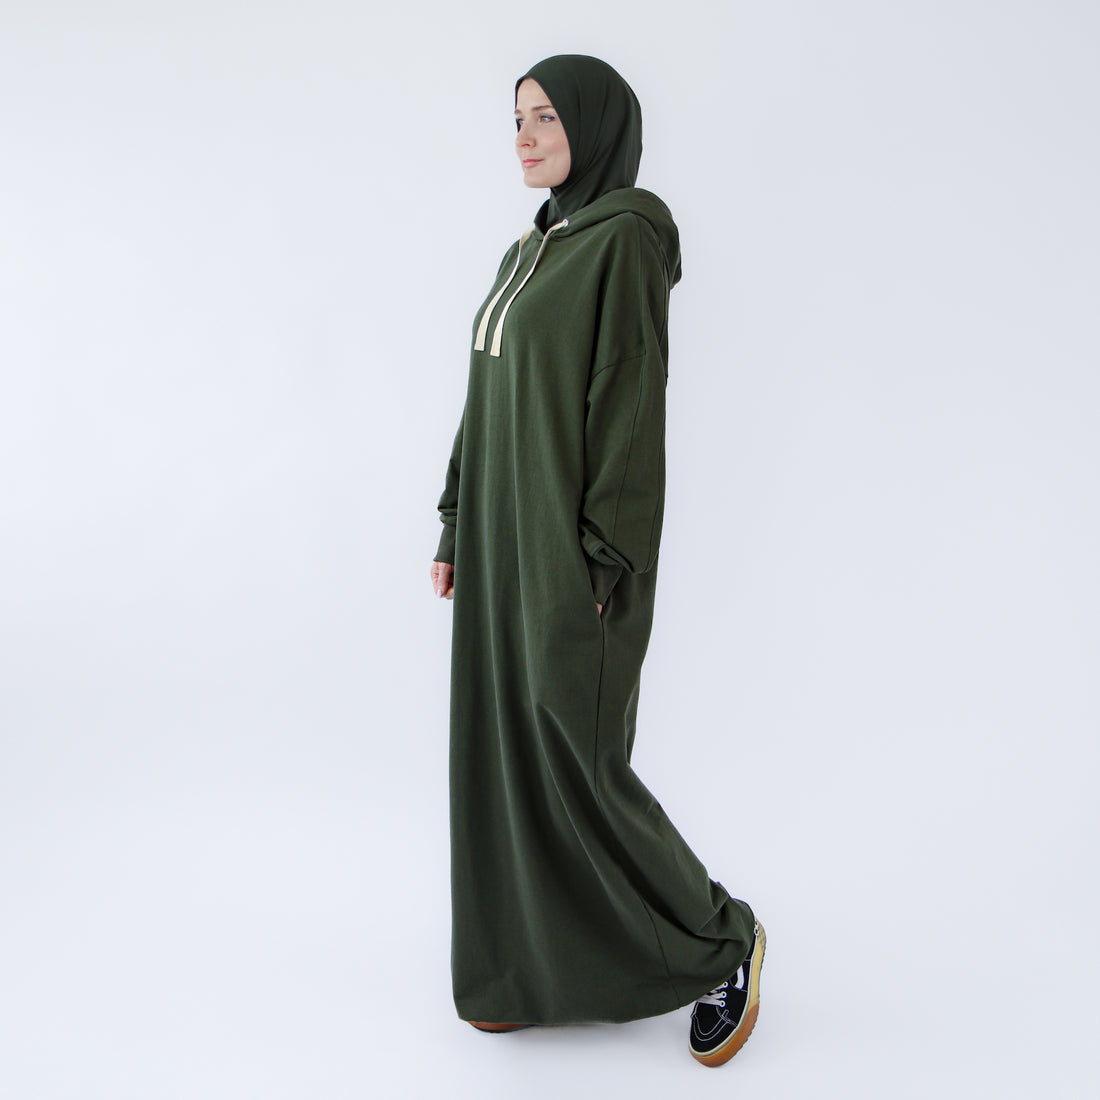 Robe musulmane maxi de style sportif abaya "Khaki Oasis"